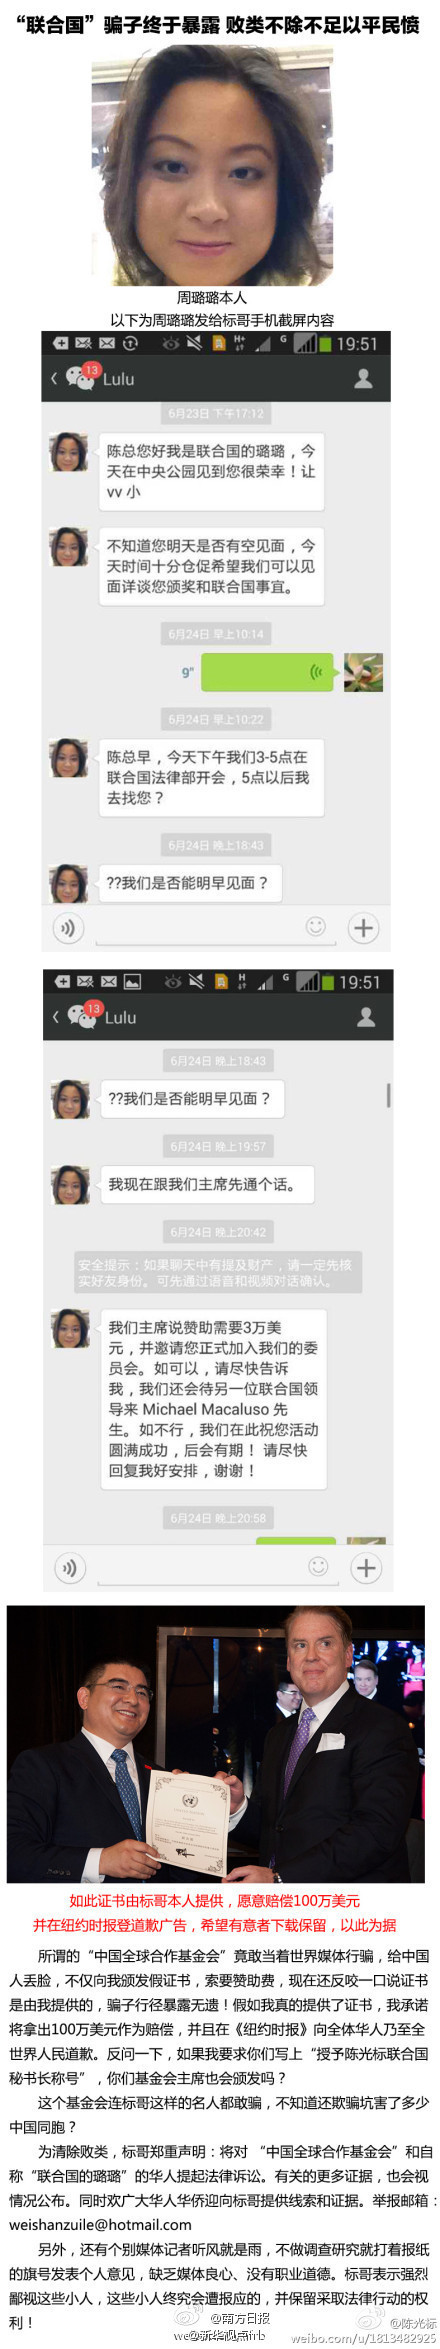 陈光标在微博曝光女骗子及受骗聊天记录(图)